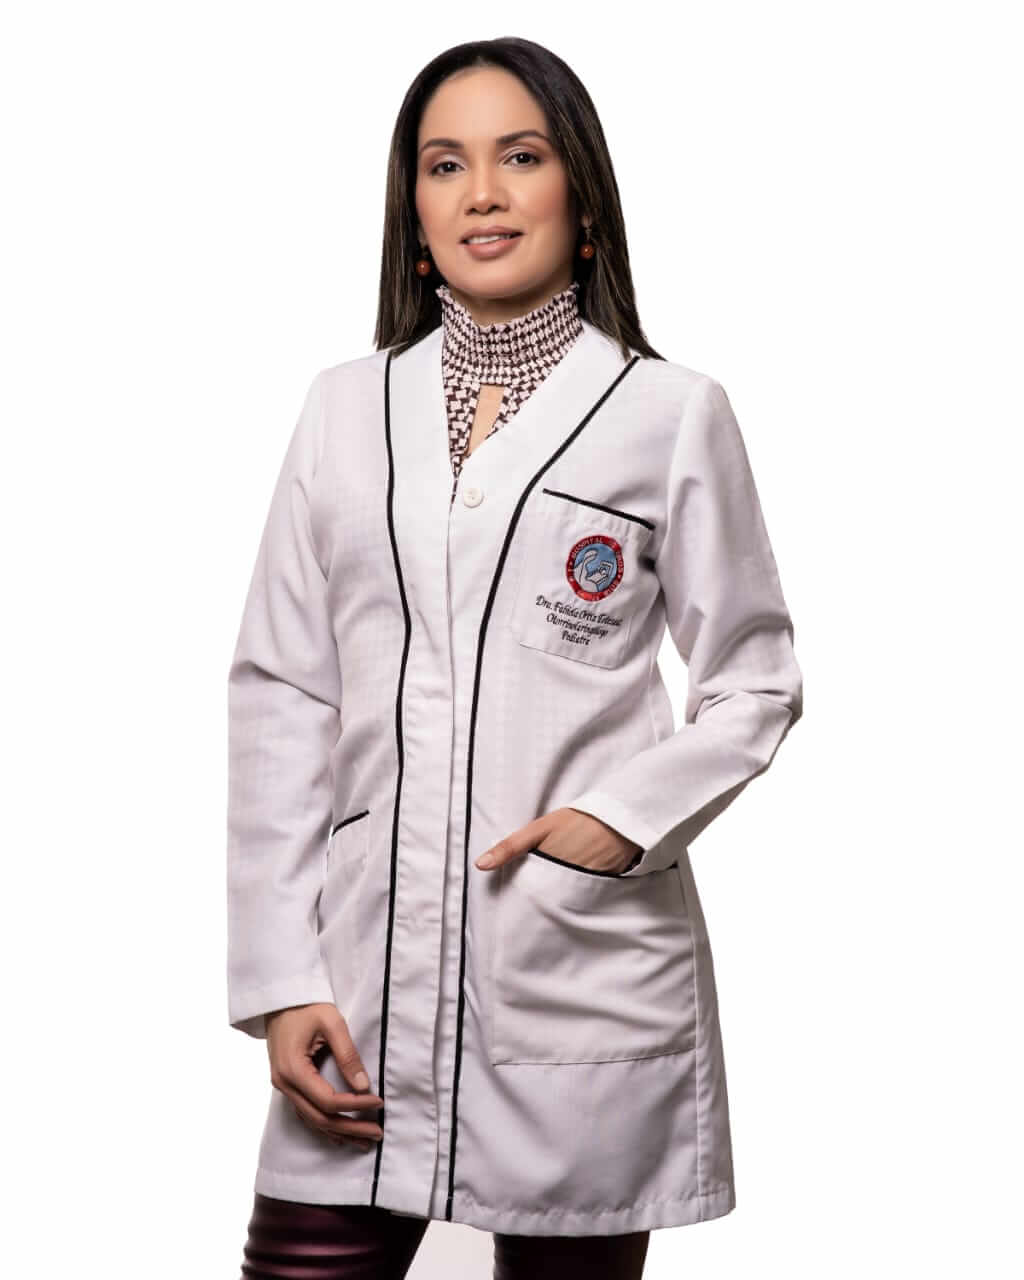 Dra. Fabiola Ortiz